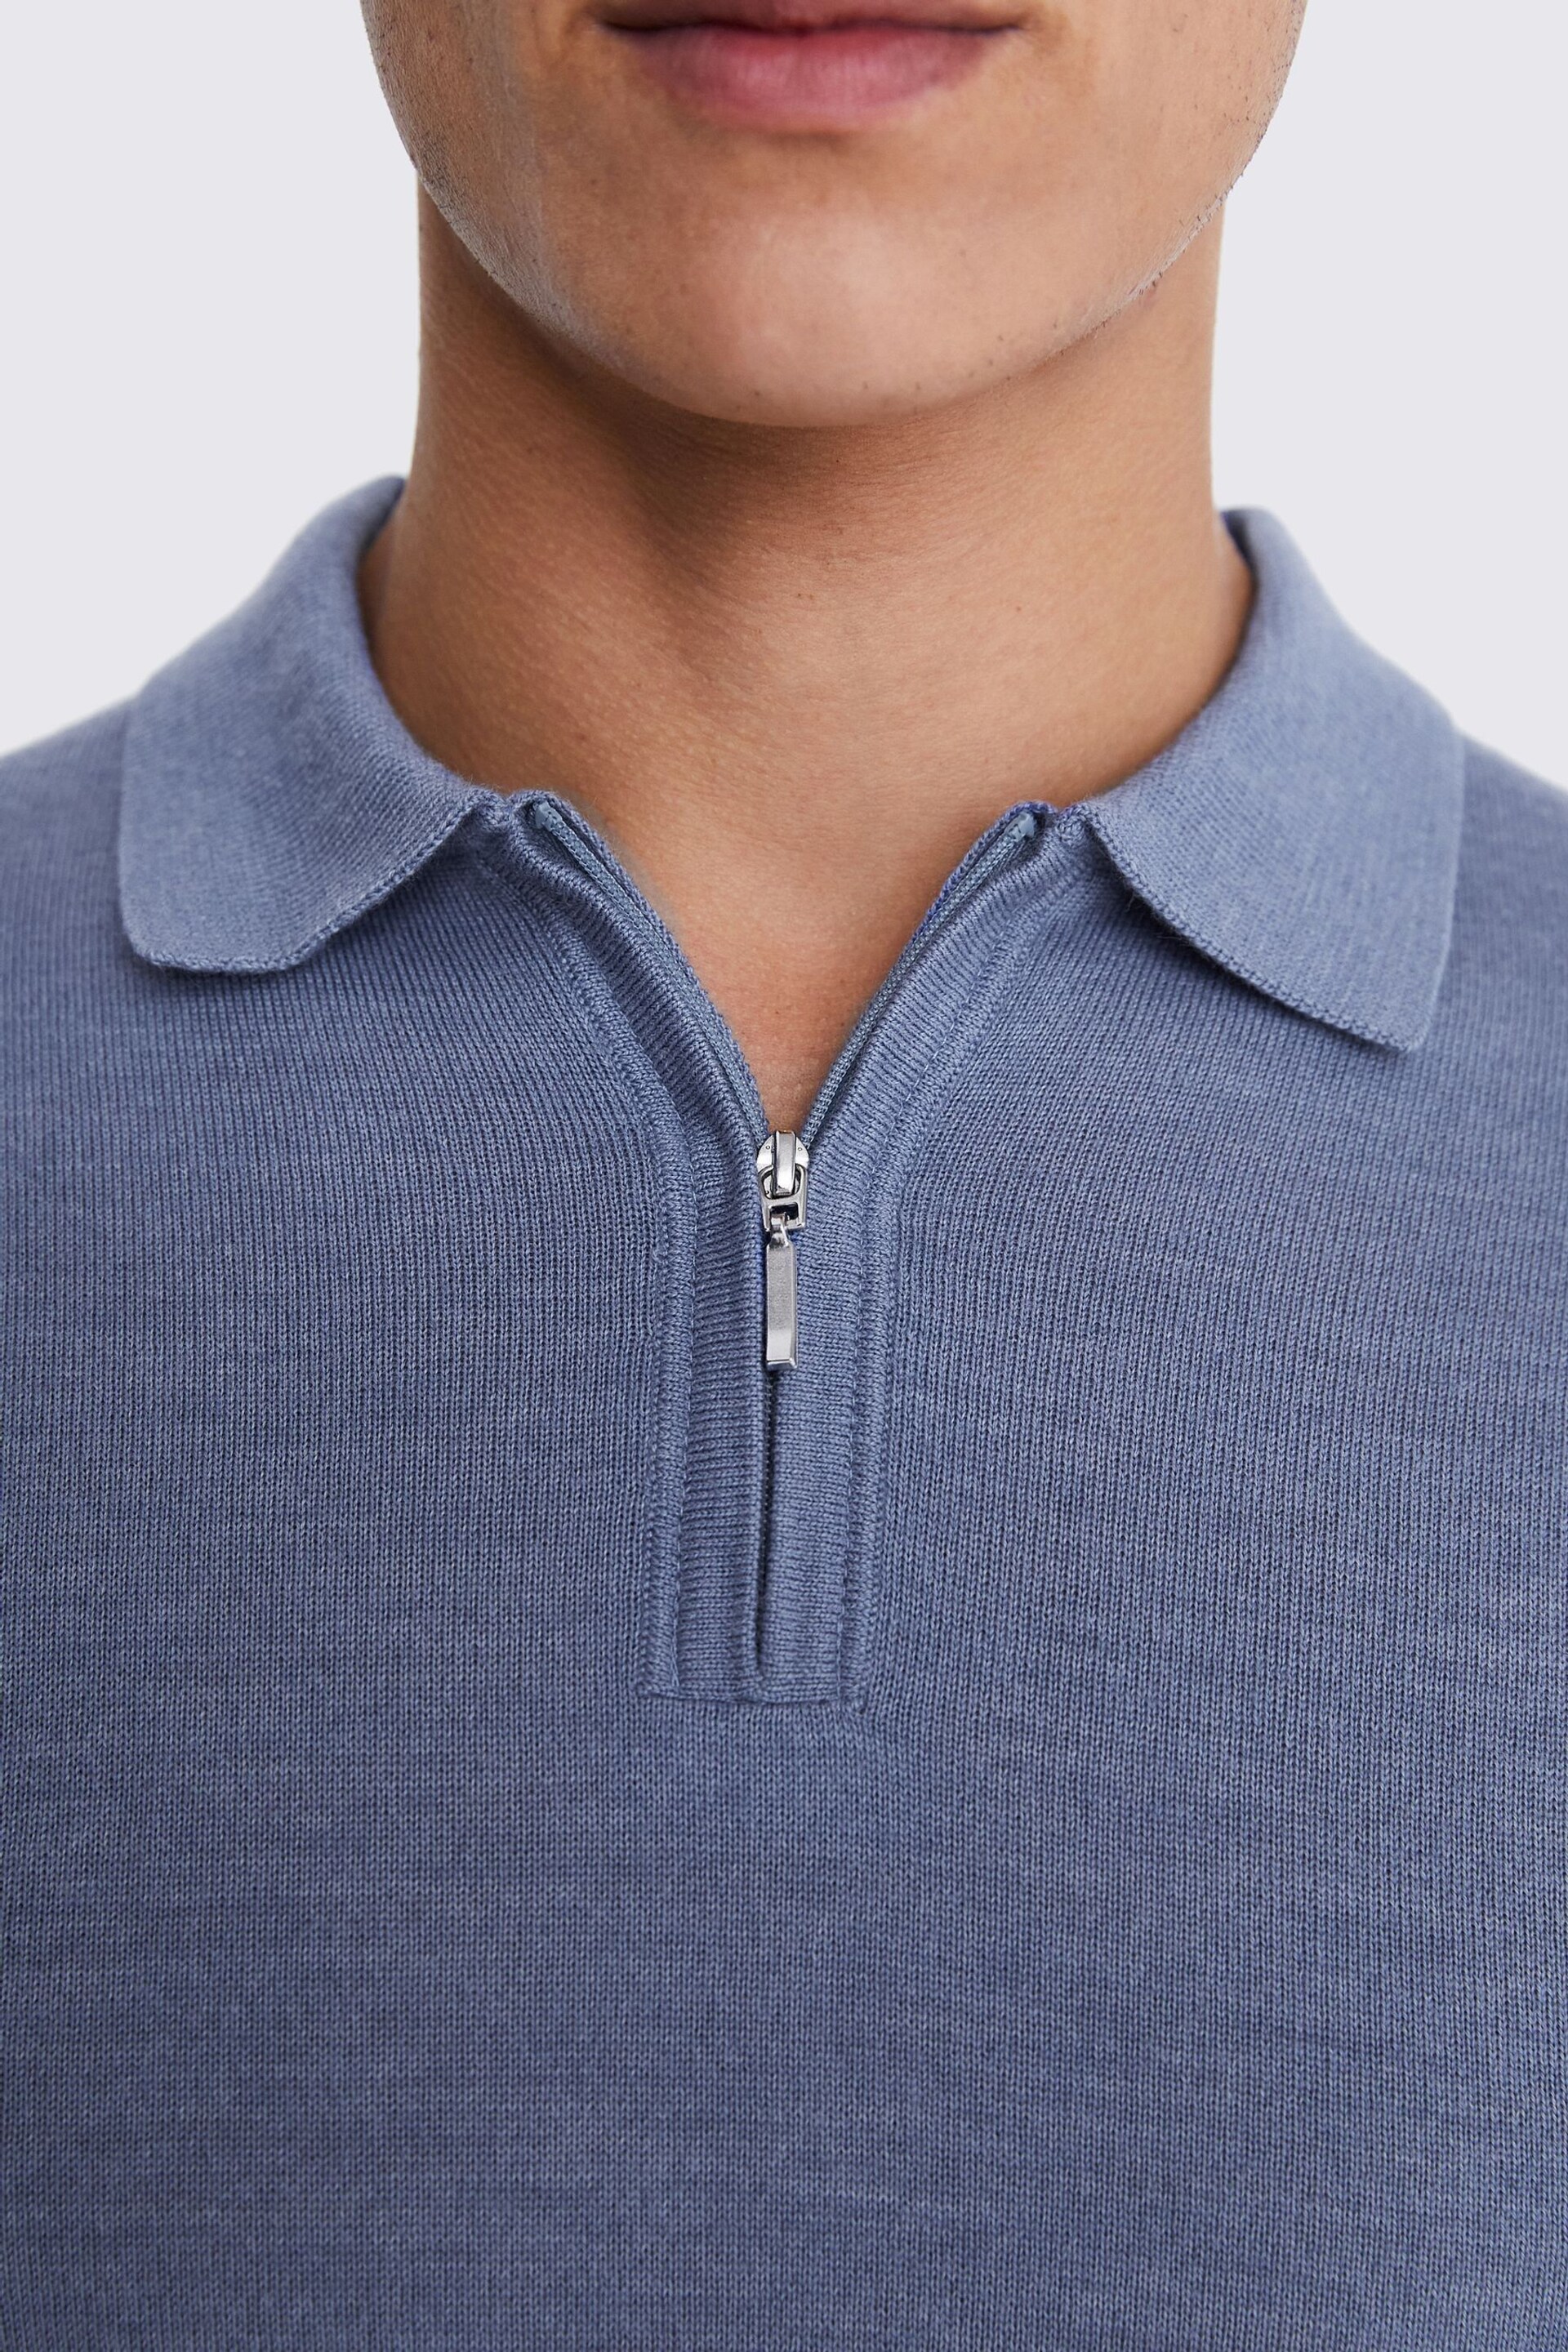 MOSS Sky Blue Merino Quarter Zip Polo Shirt - Image 3 of 3